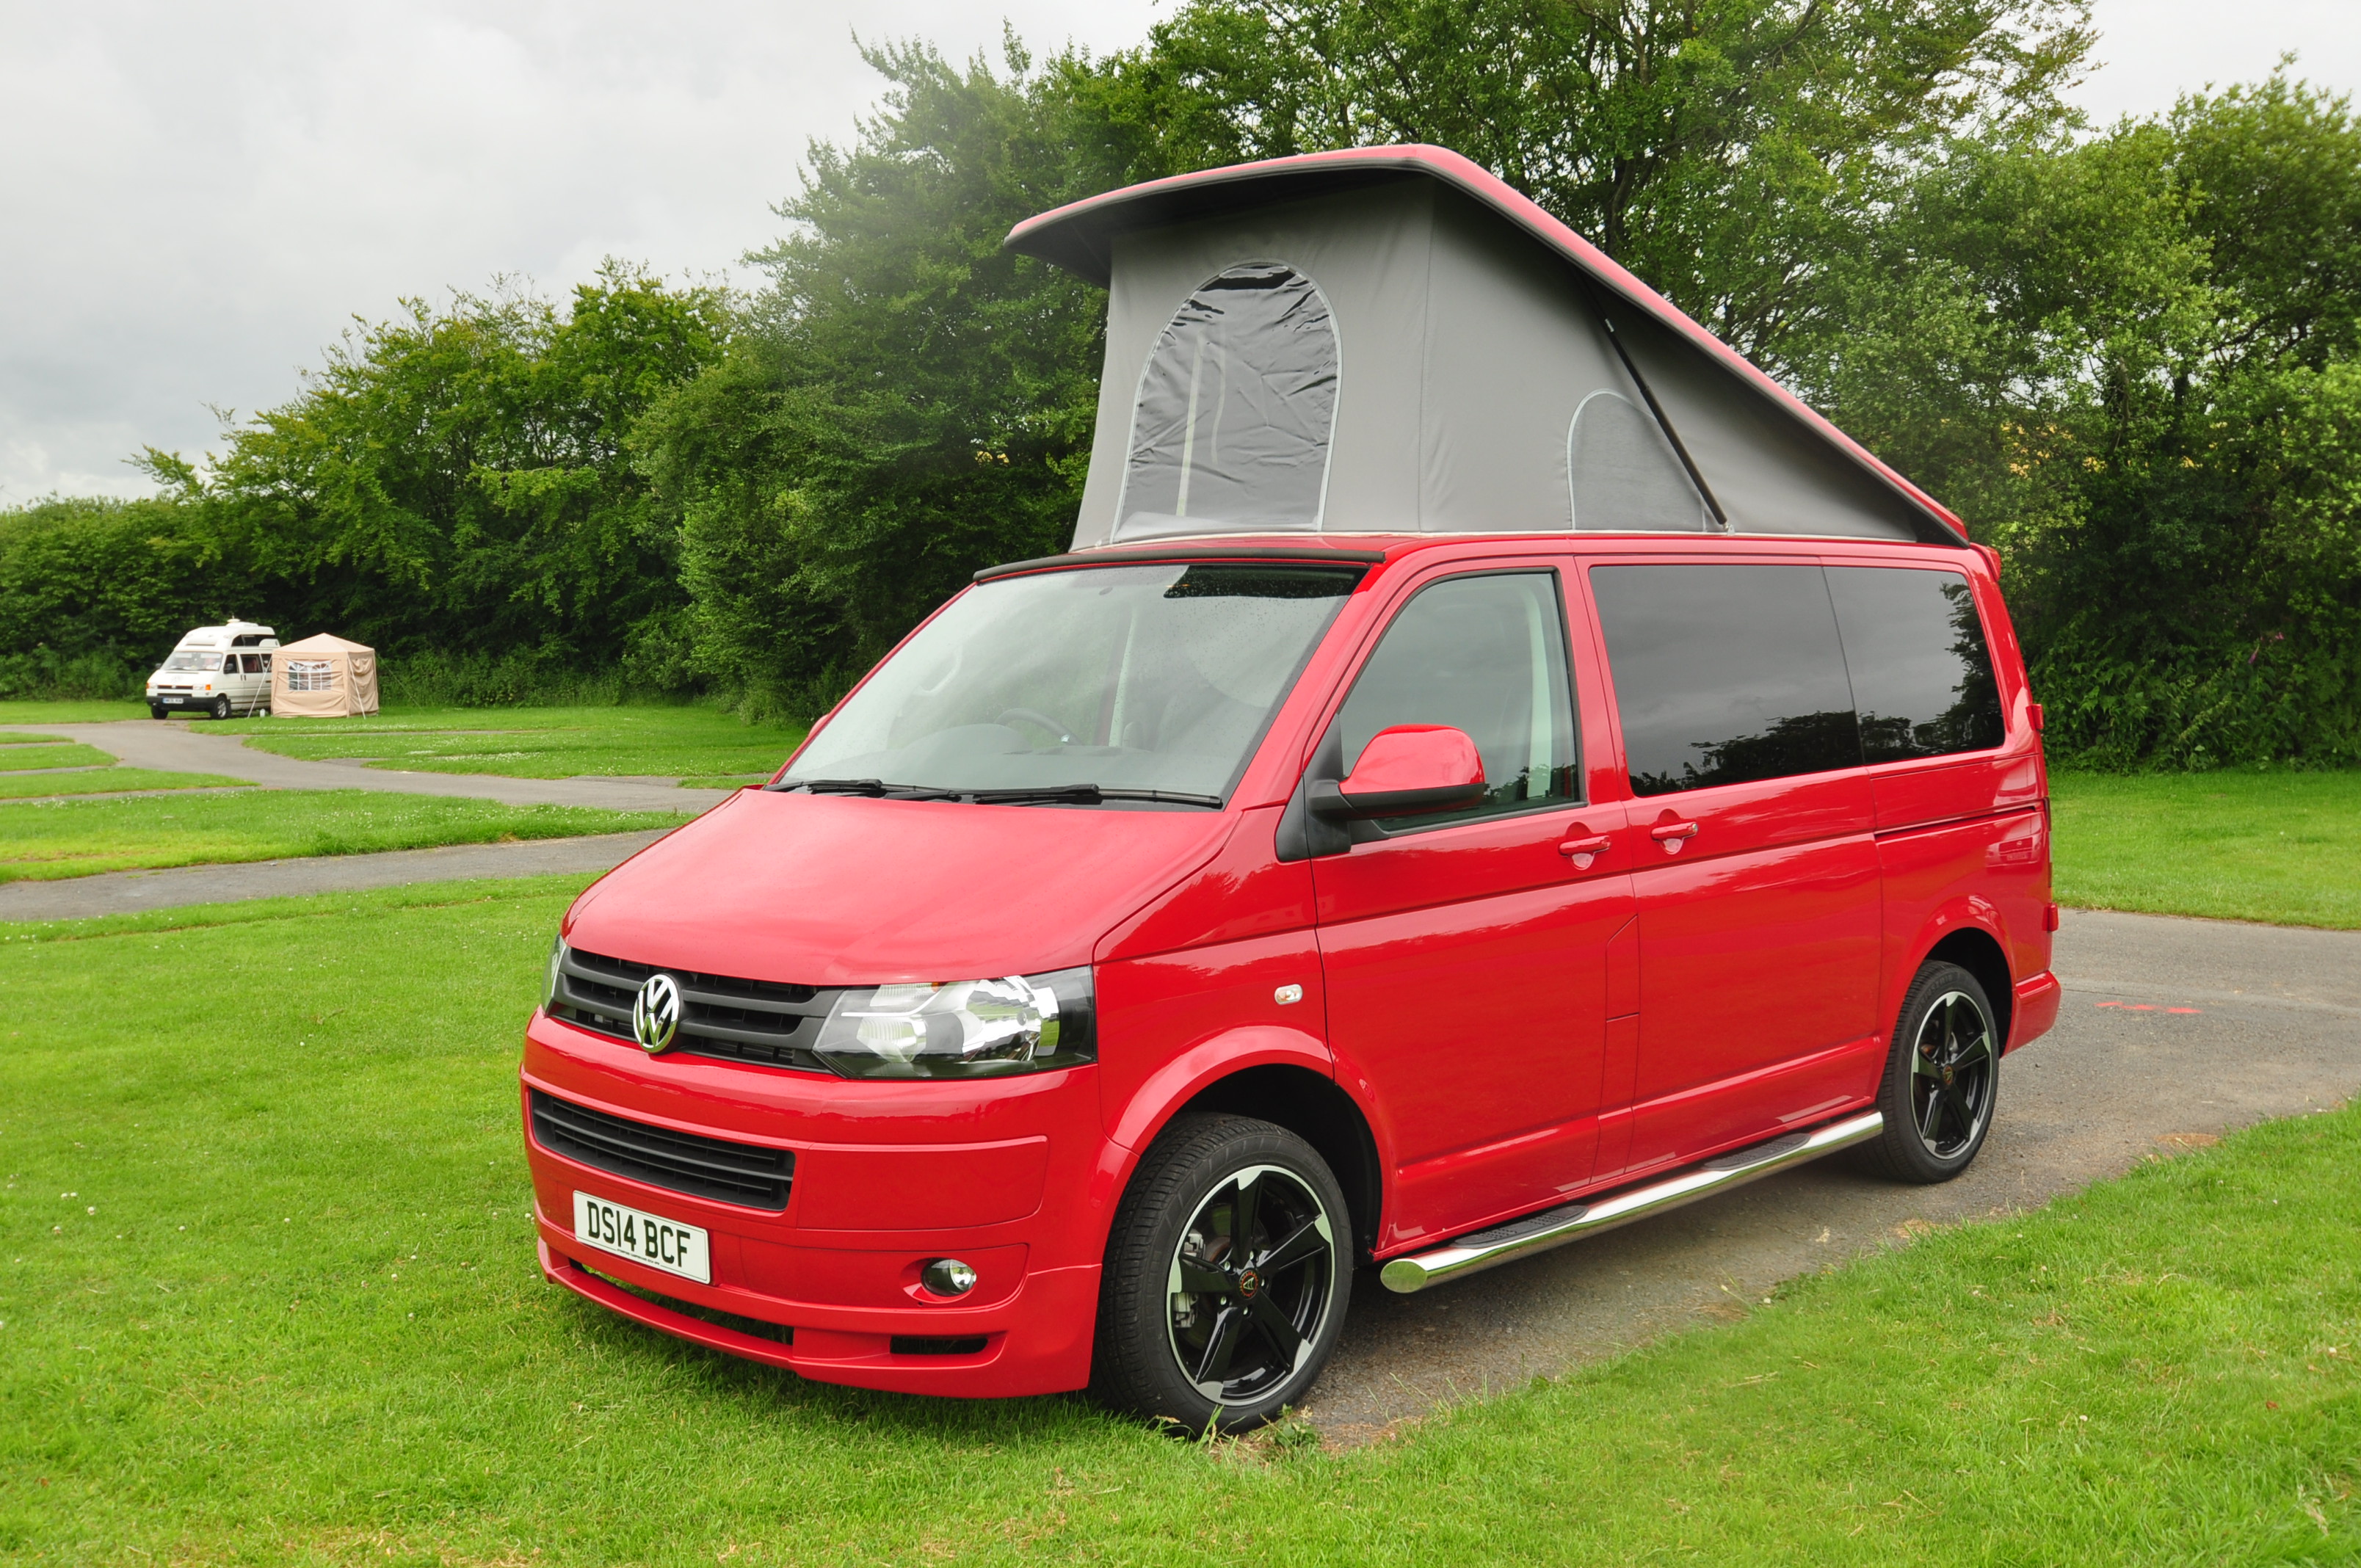 Stowford Campervans: making VW campers affordable - Caravan Guard